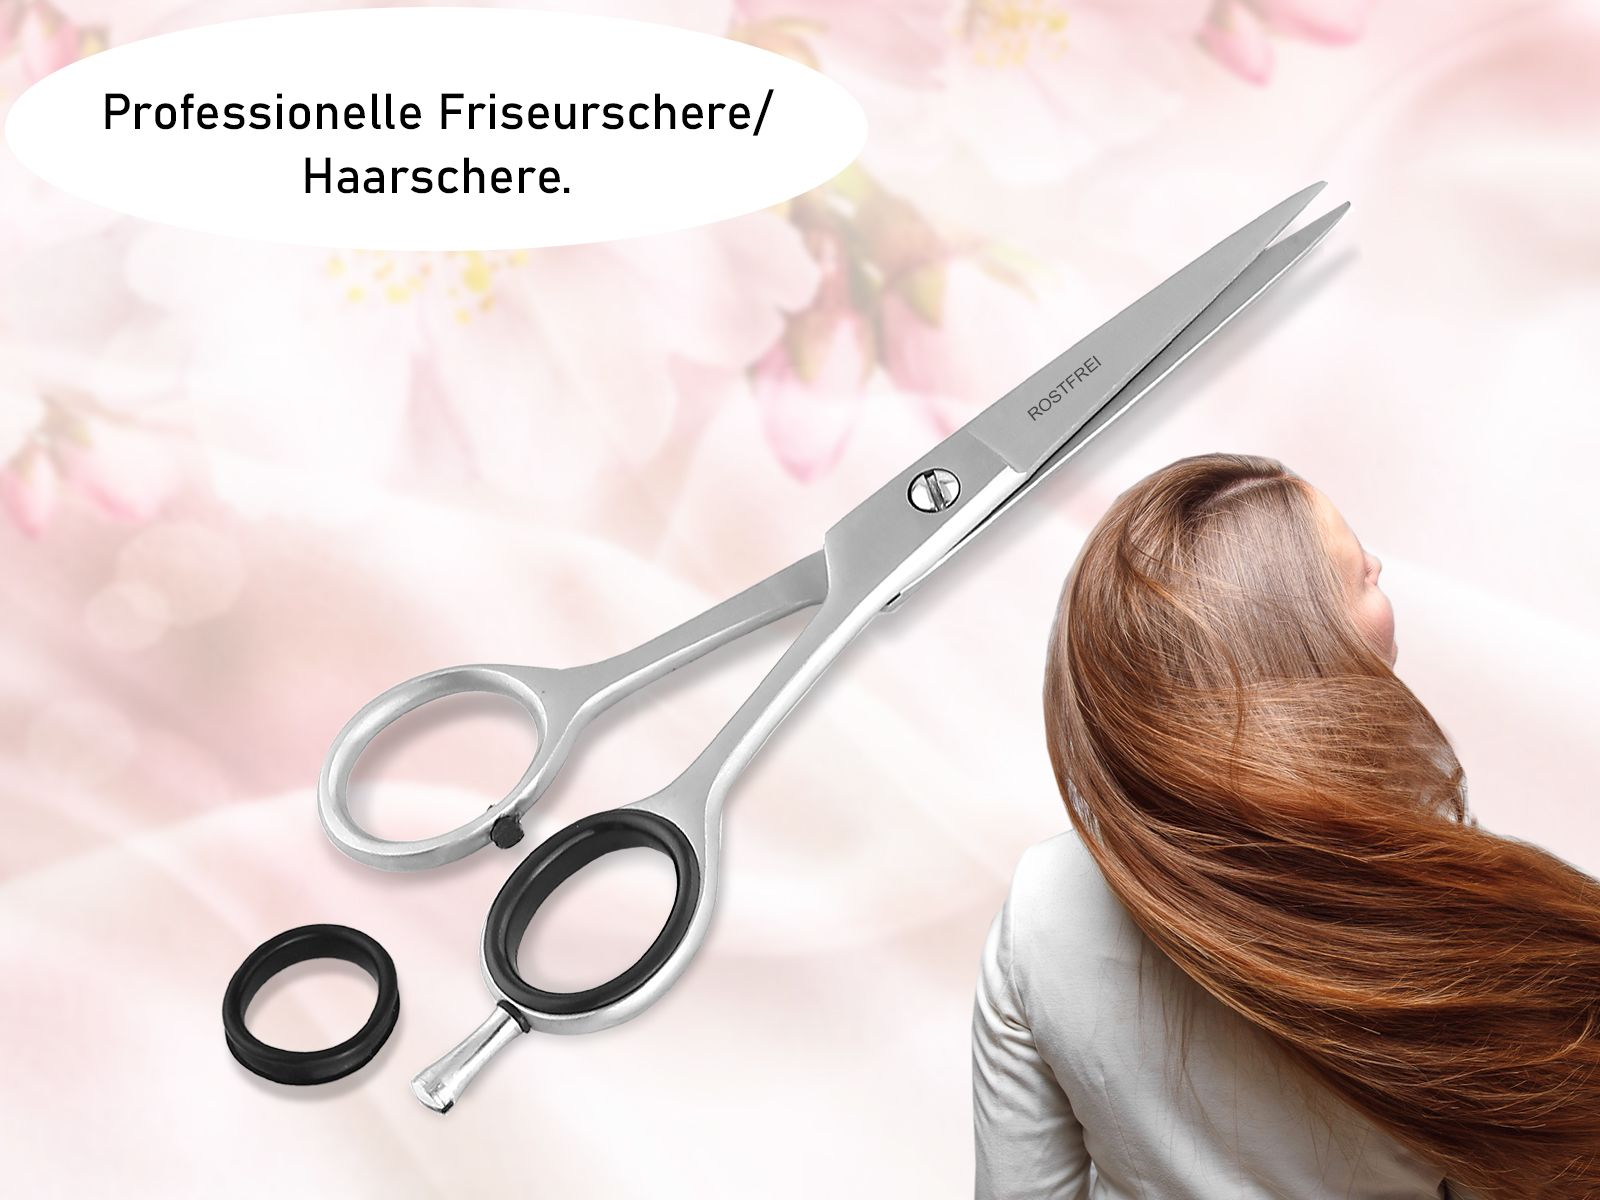 Schneide 81352744 einen Haarschneideschere perfekten Rostfrei cm Haarschnitt mit Edelstahl 13,97 Profi für Haarschere Scharfer Friseurschere